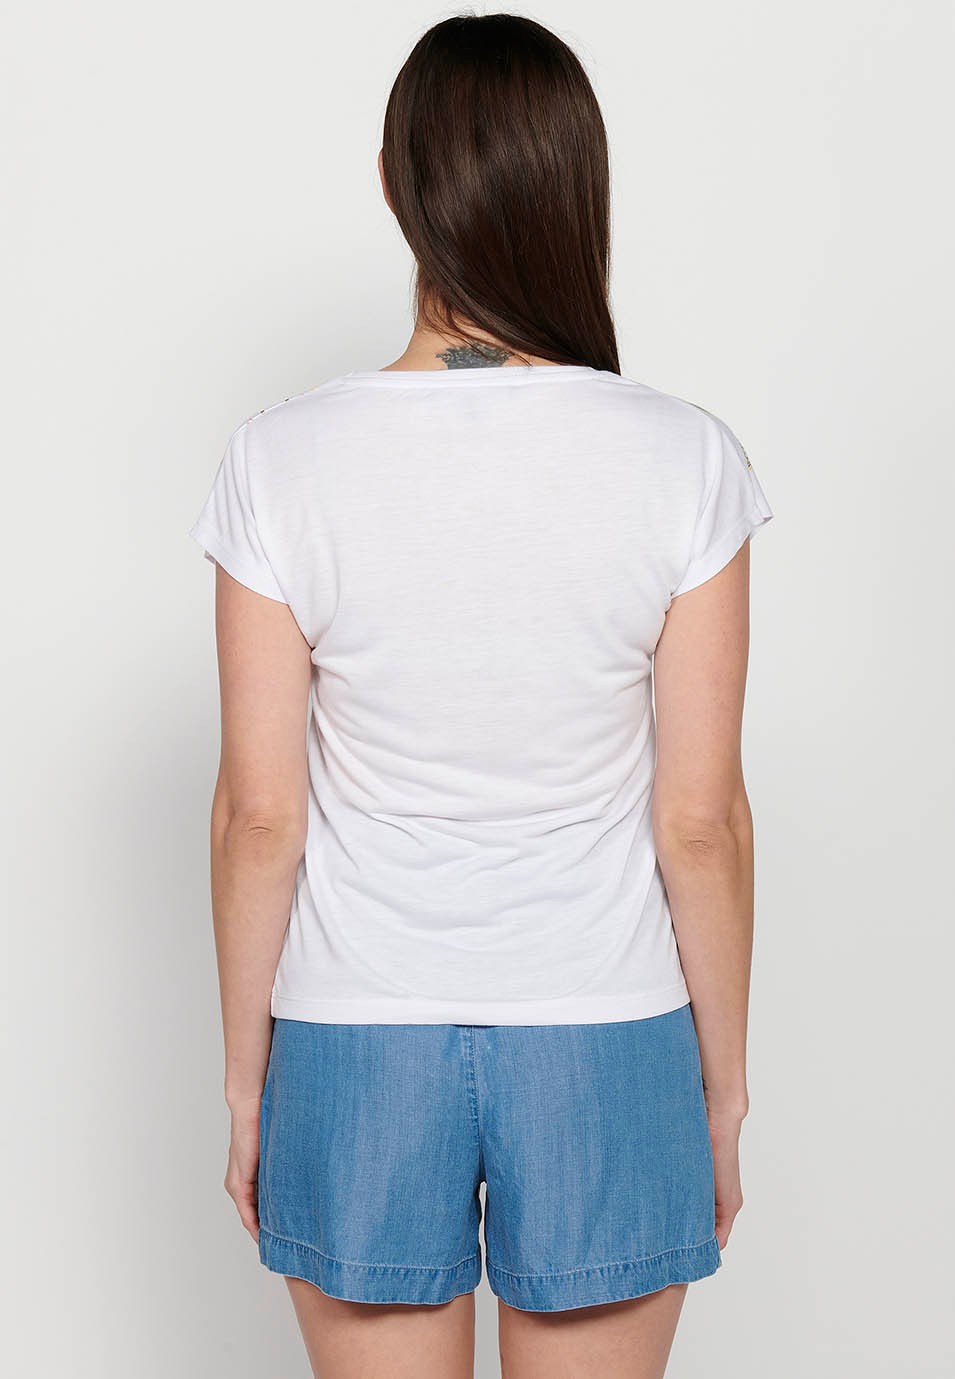 Camiseta Top de manga corta de algodón de Cuello redondo con Bordado floral delantero color Blanco para Mujer